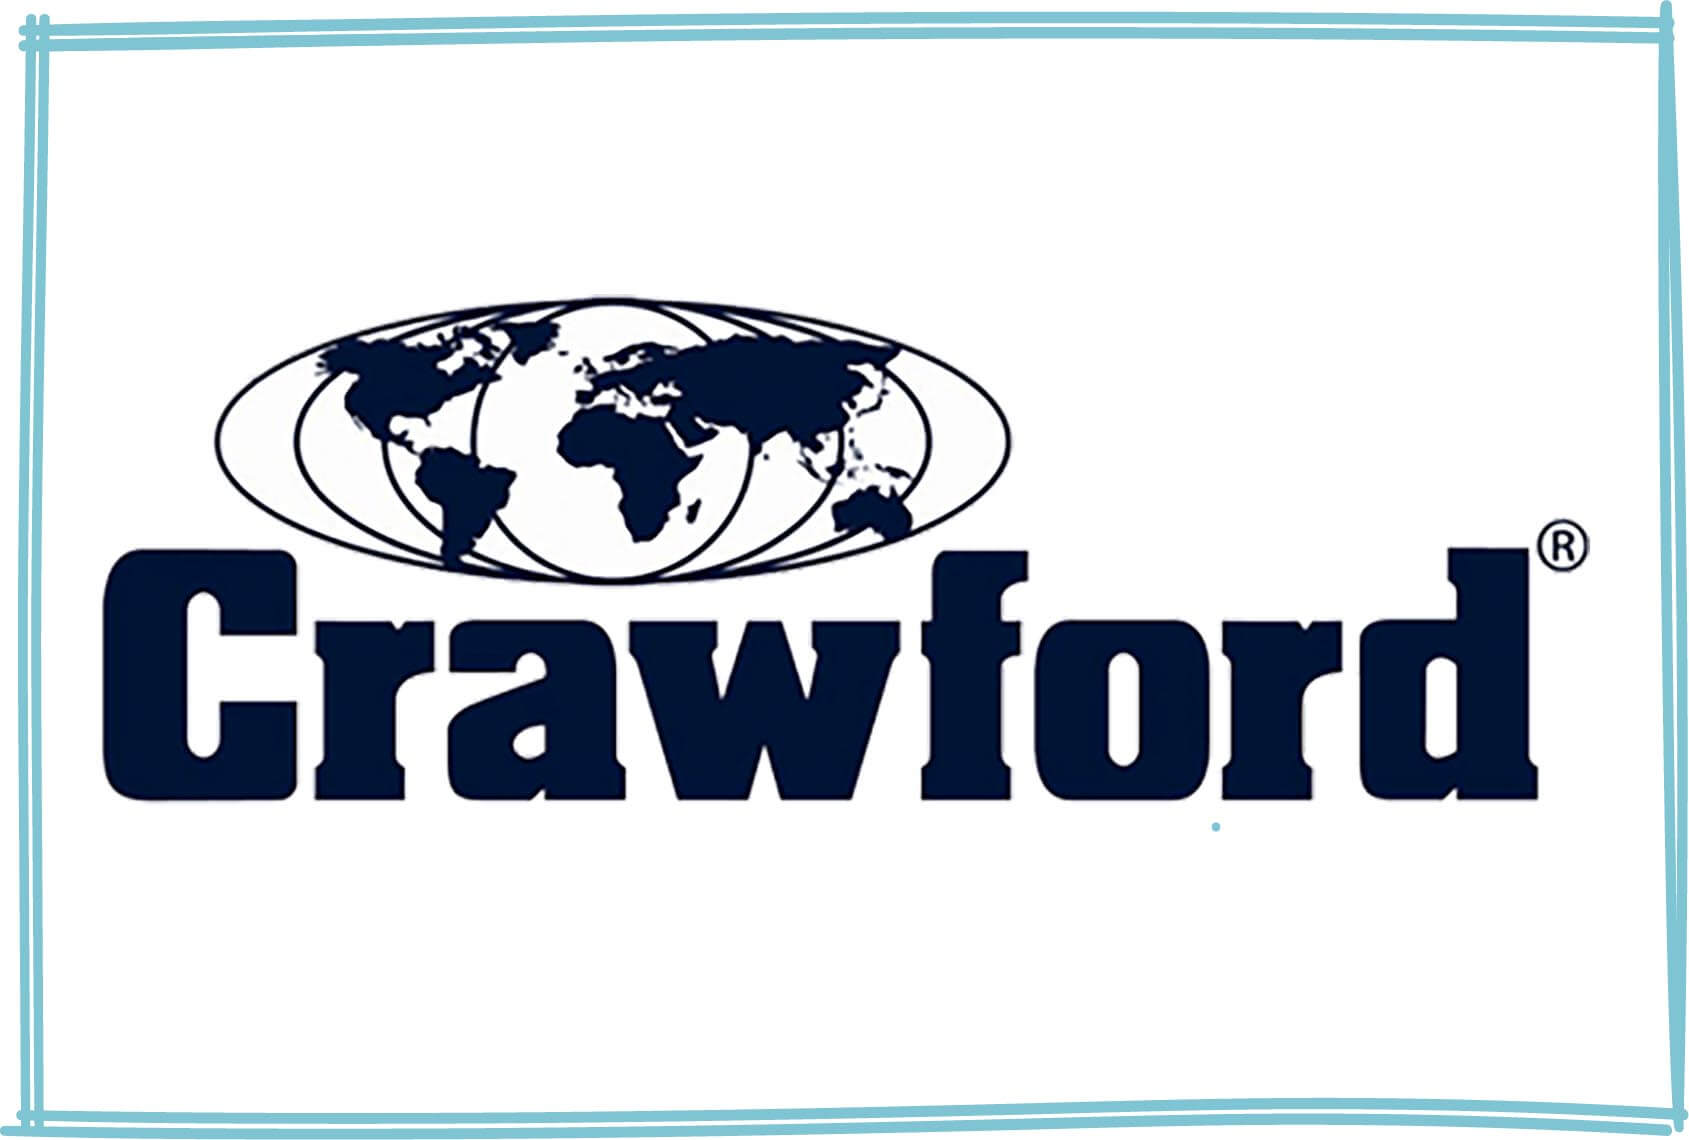 Crawford loss adjusters logo